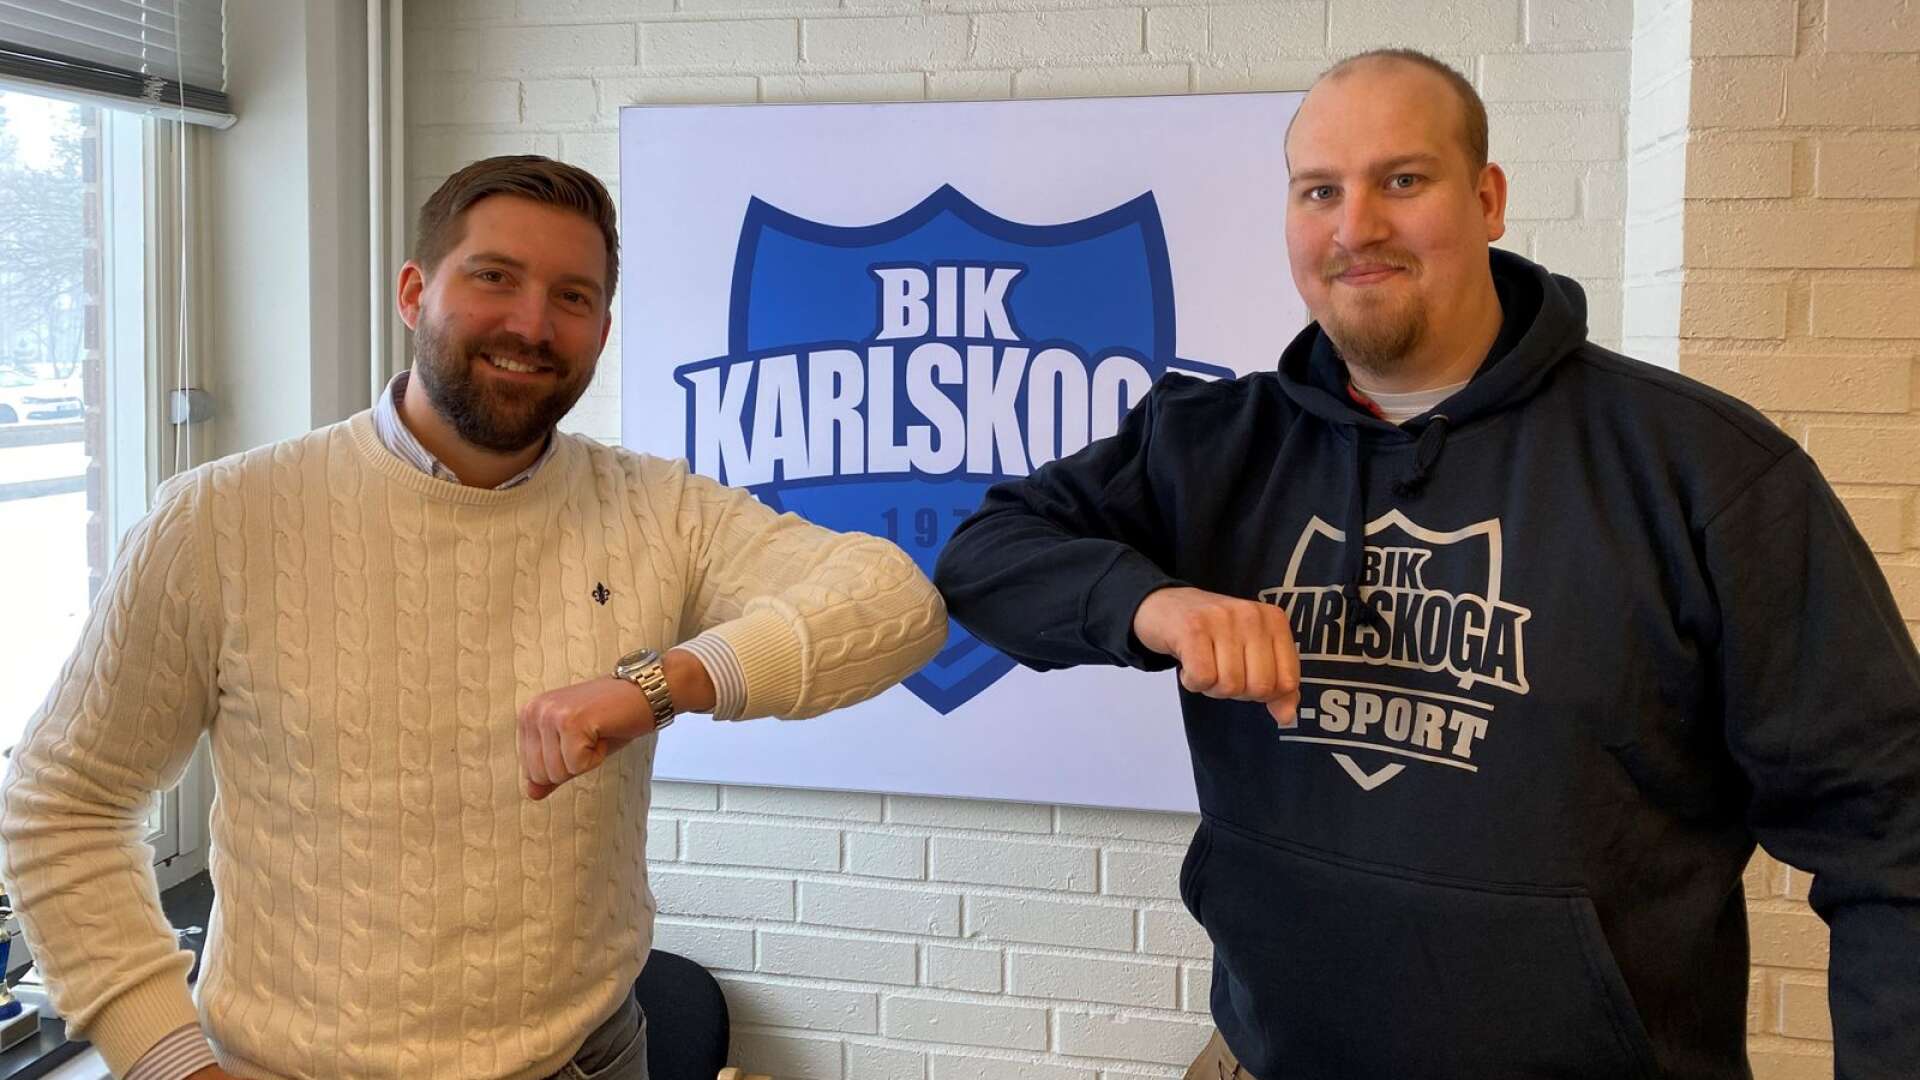 BIK:s marknadschef Jakob Bengtzén tillsammans med Joacim Wilhelmsson (höger) som nu blir general manager för BIK Karlskoga e-sport.